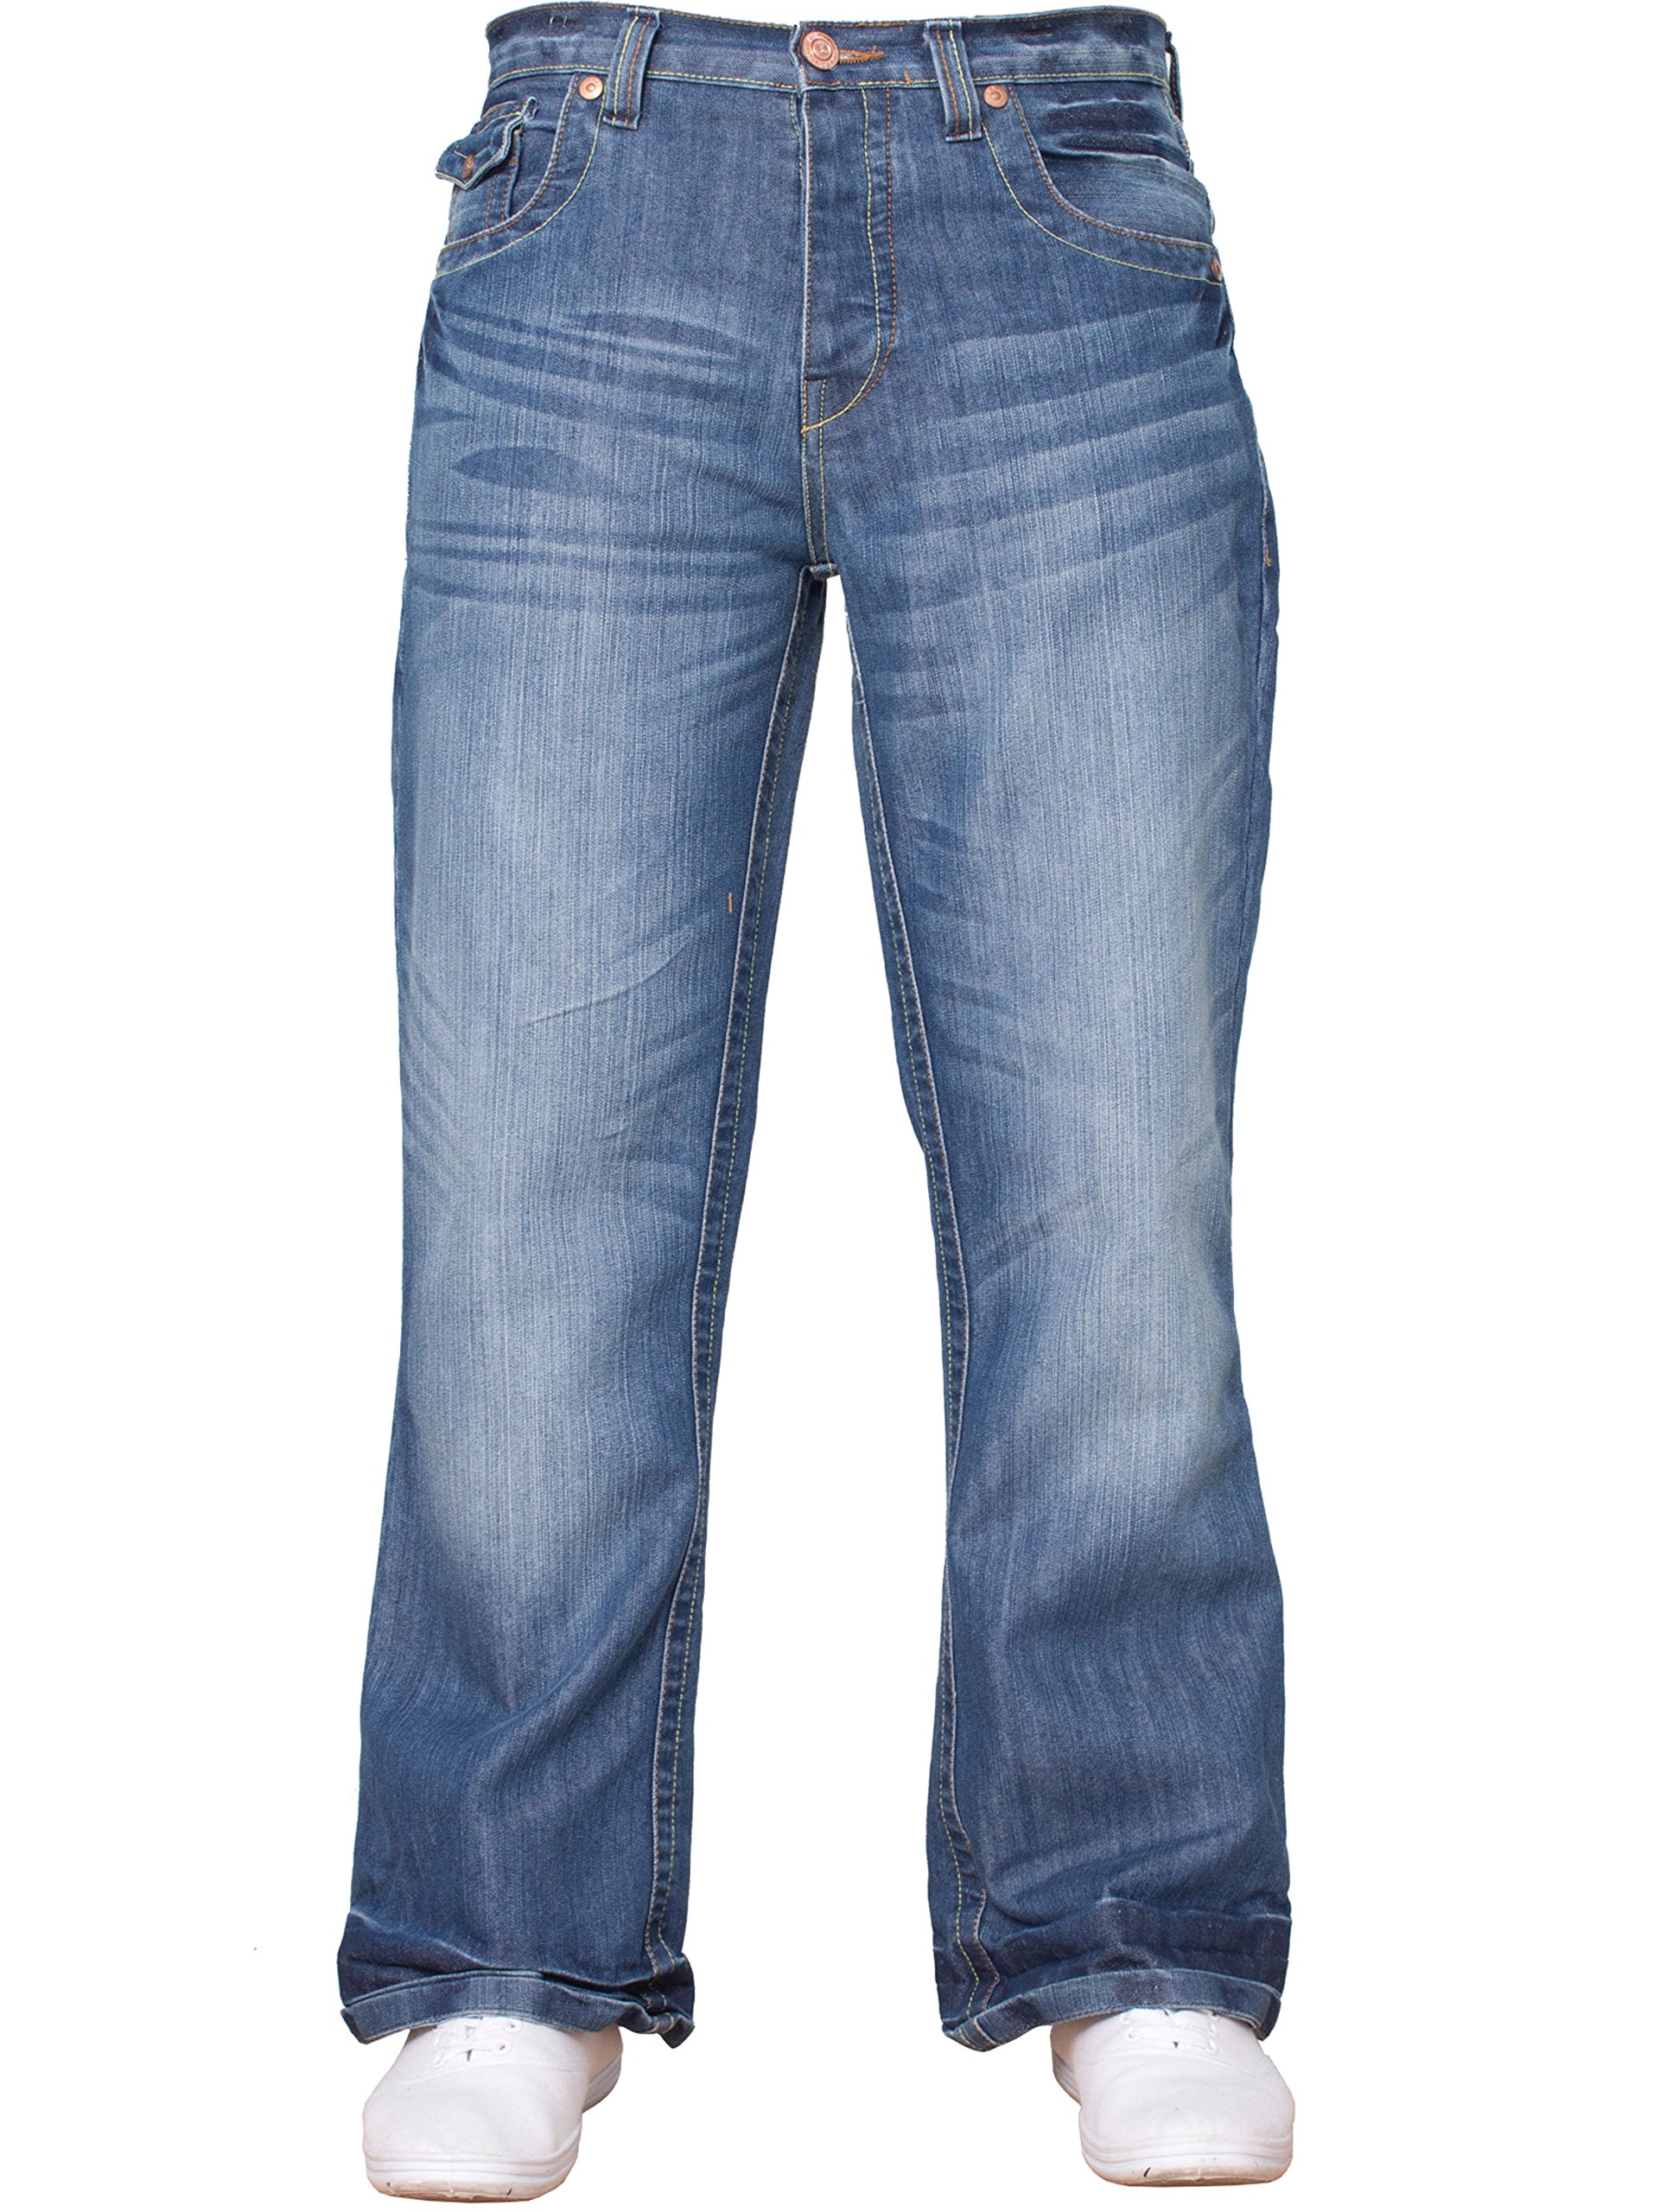 APT Herren einfach blau Bootcut weites Bein ausgestellt Works Freizeit Jeans Große Größen in 3 Farben erhältlich - Helle Waschung, 44W x 32L